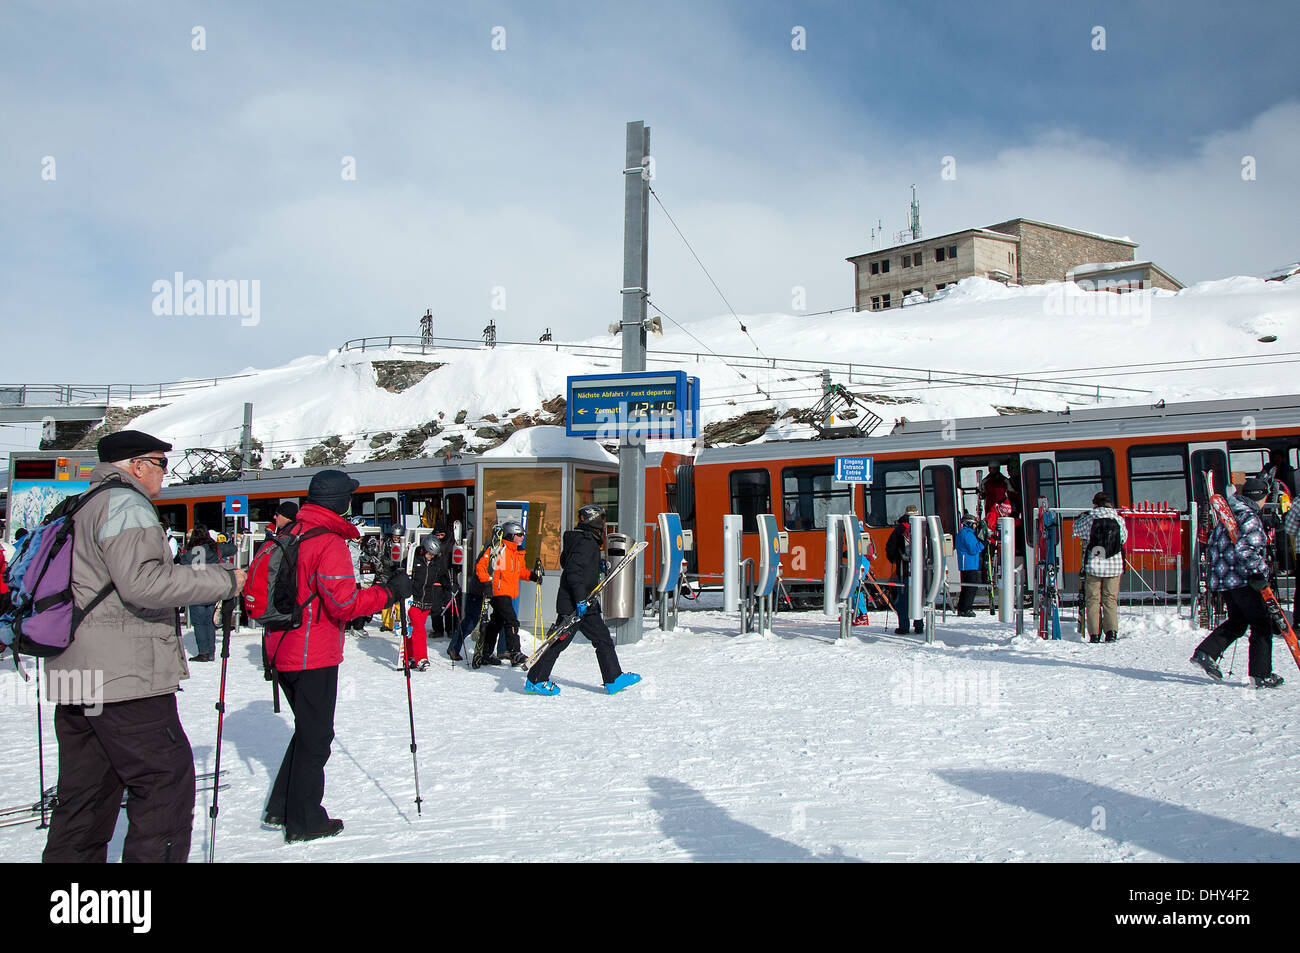 ZERMATT - Januar 17: Die auf dem Bahnhof in Gornergrat, in den Schweizer Alpen am 17. Januar 2013 in der Schweiz. Gornergrat-r Stockfoto